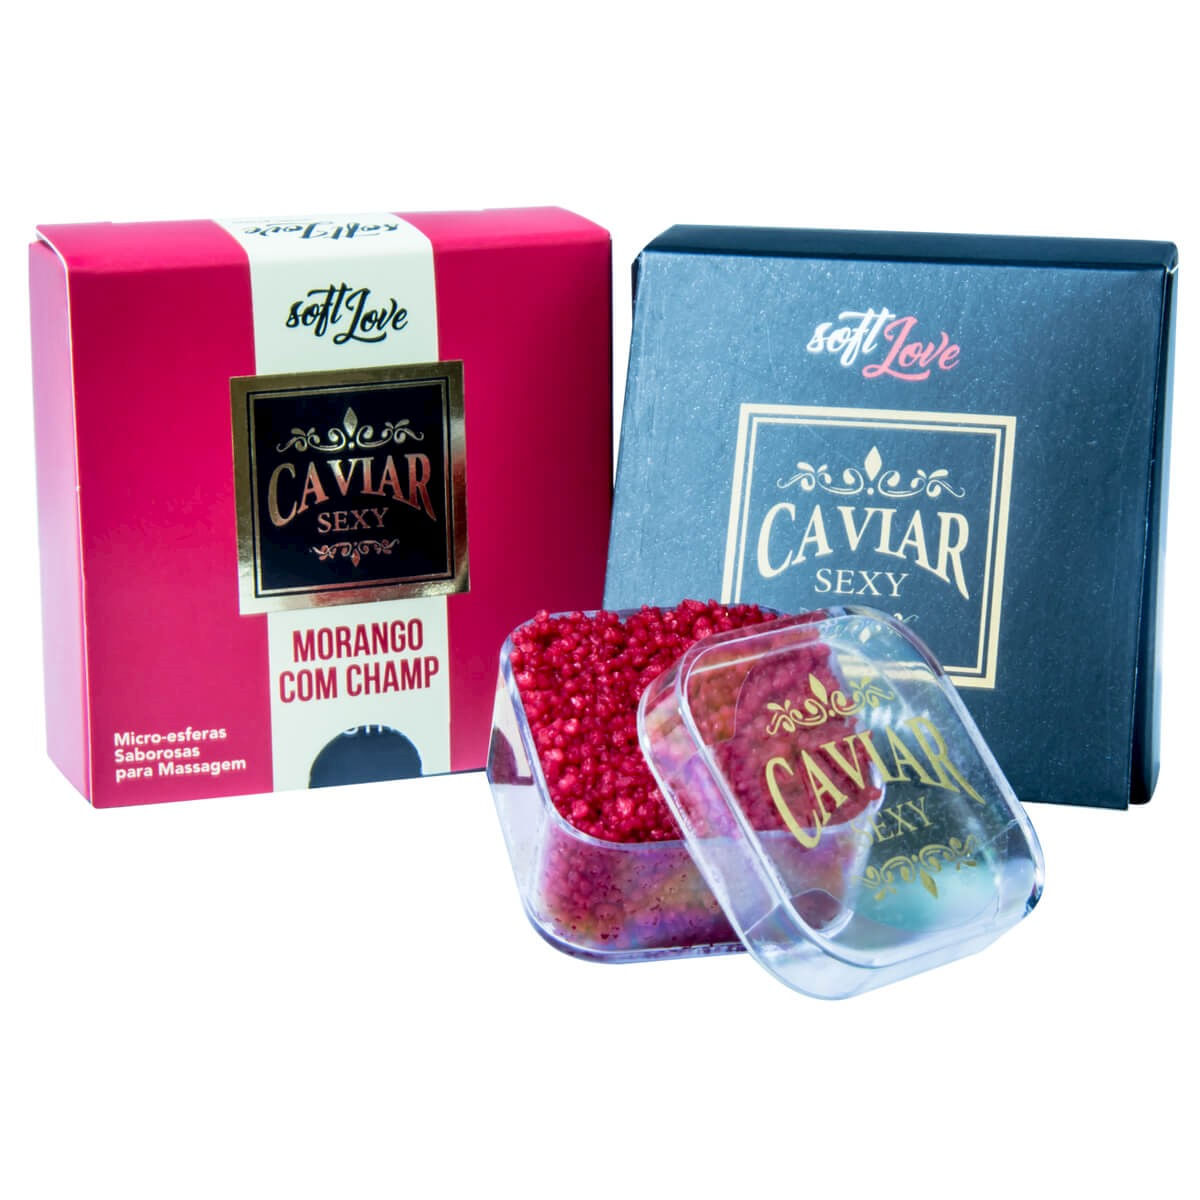 Caviar Sexy Morango c/ Champanhe Micro Esferas Saborosas para Massagem 14g Soft Love